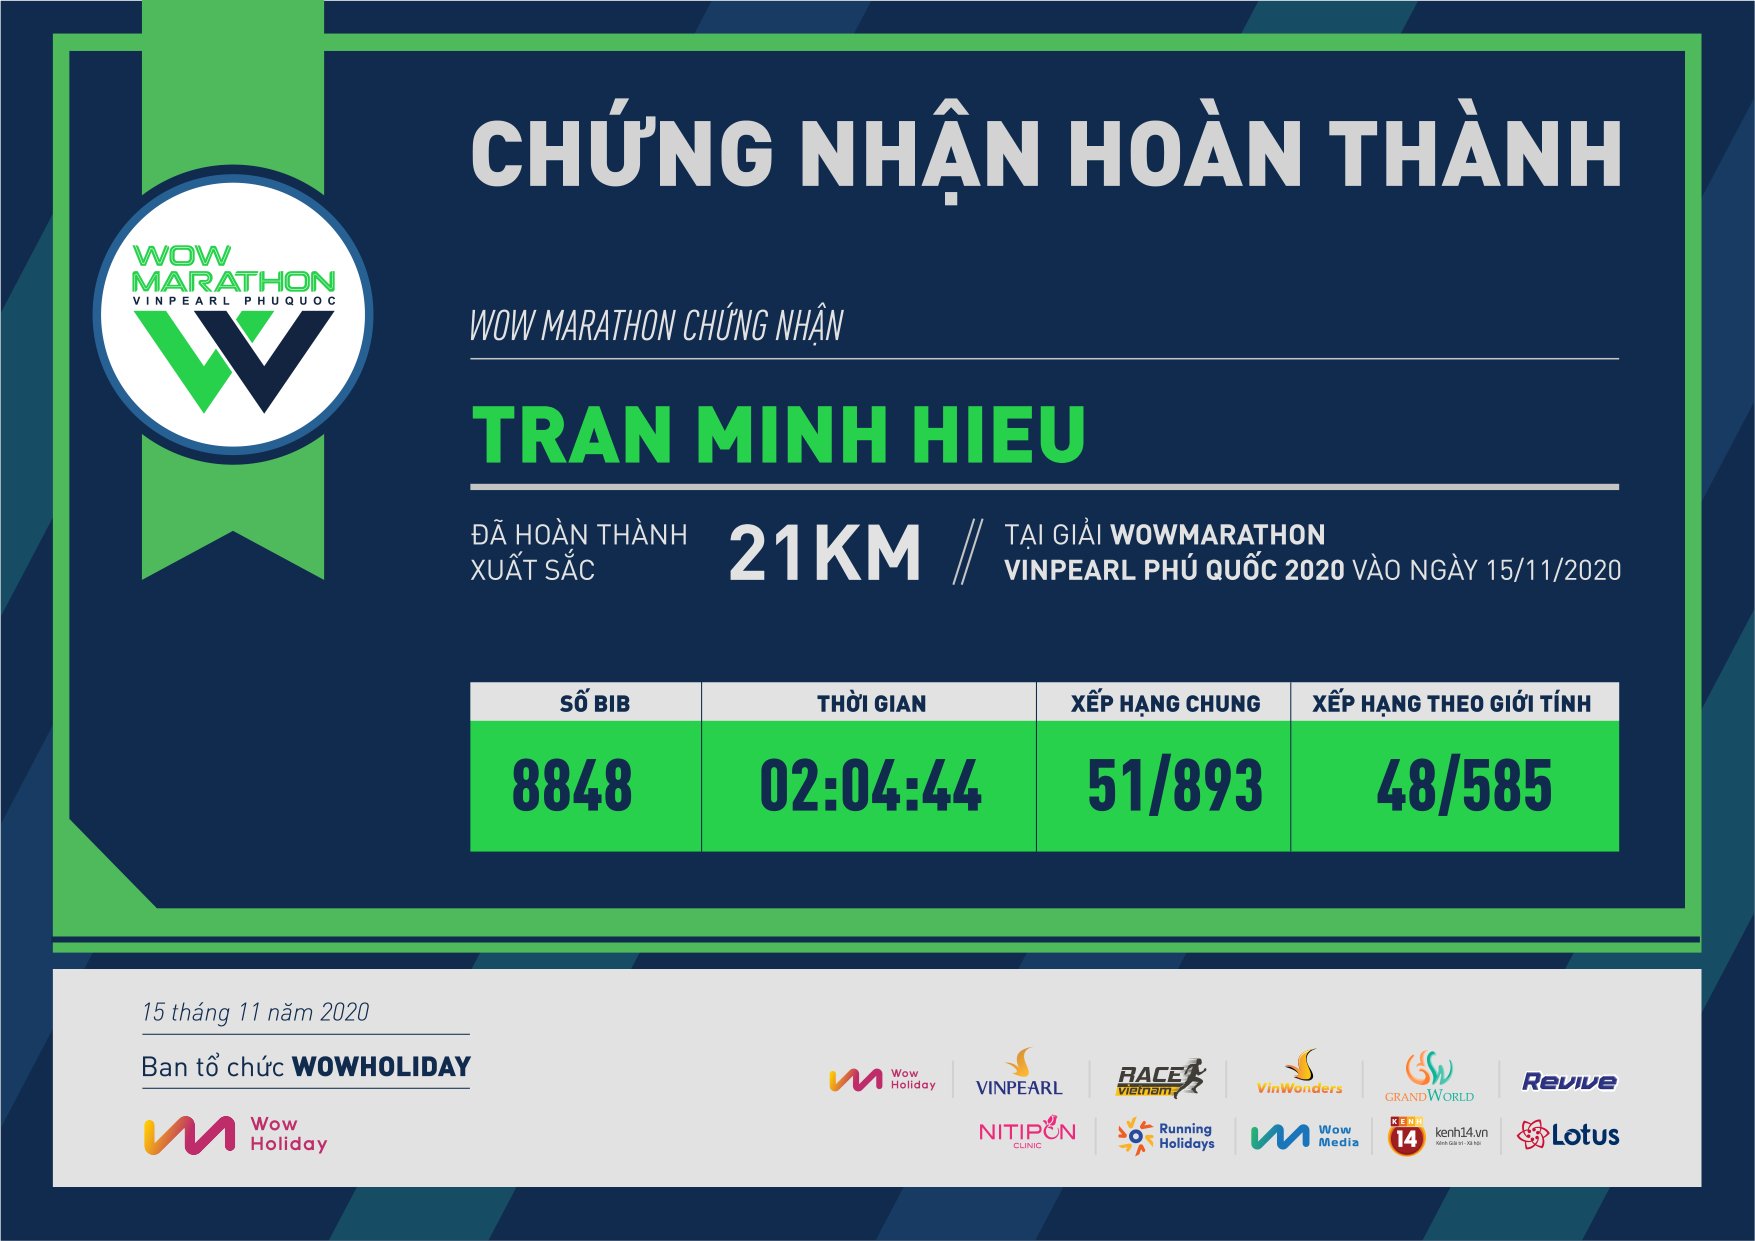 8848 - Tran Minh Hieu